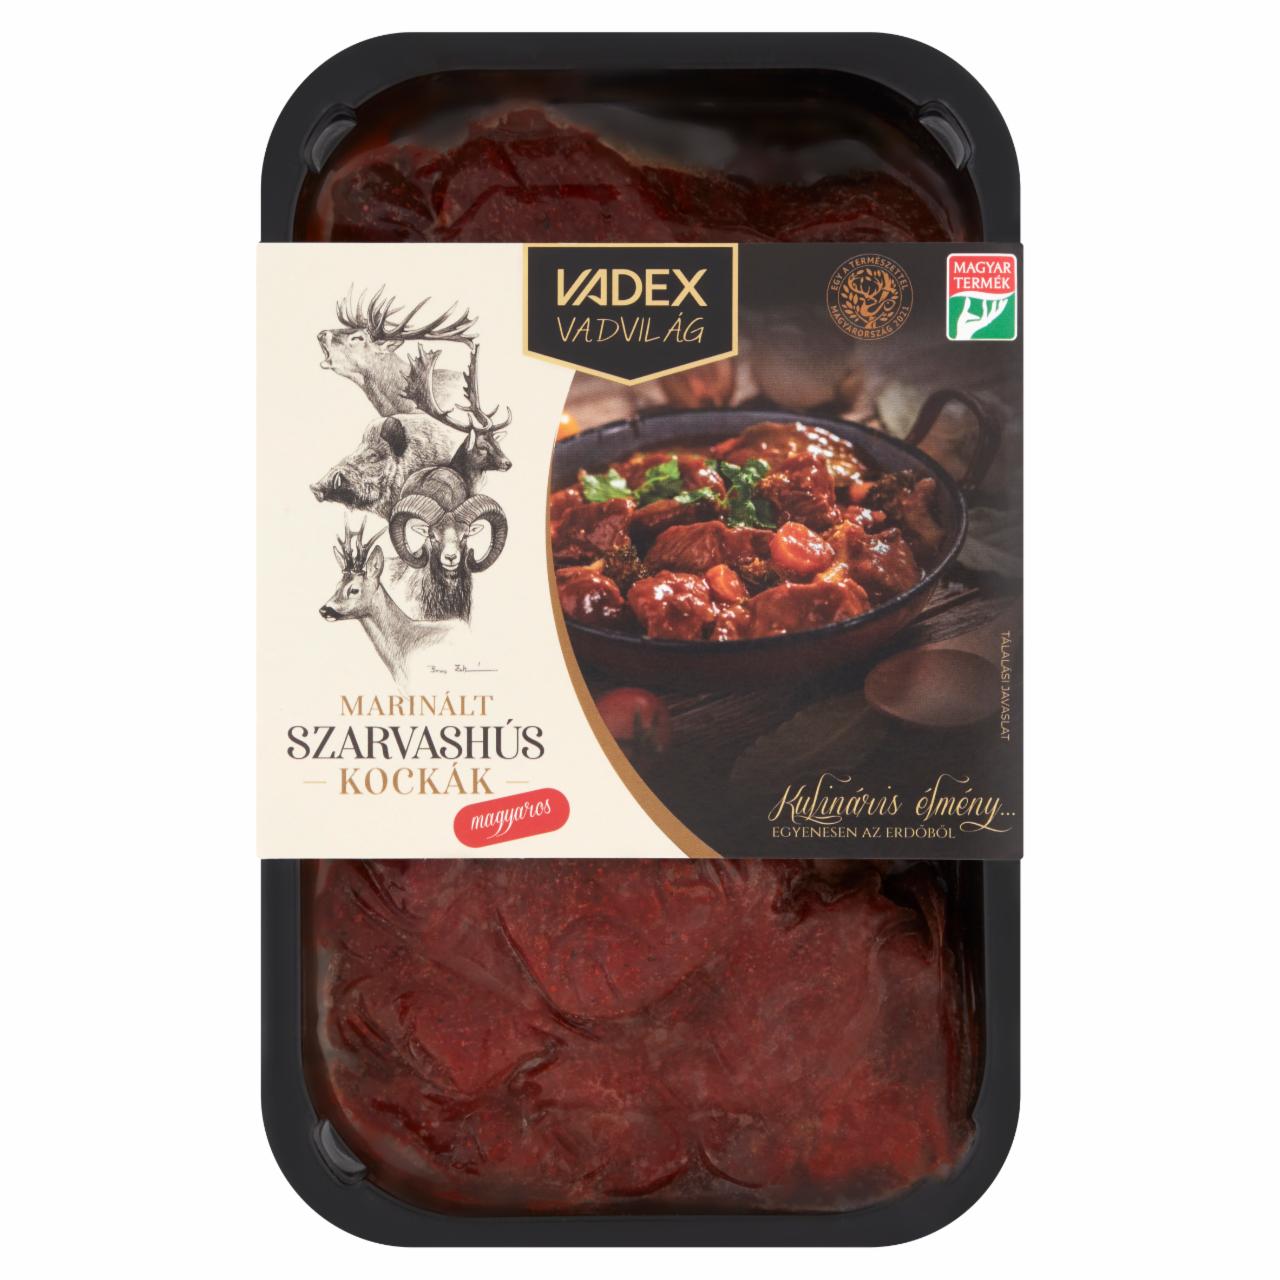 Képek - Vadex Vadvilág gyorsfagyasztott marinált szarvashús kockák magyaros fűszerezéssel 450 g